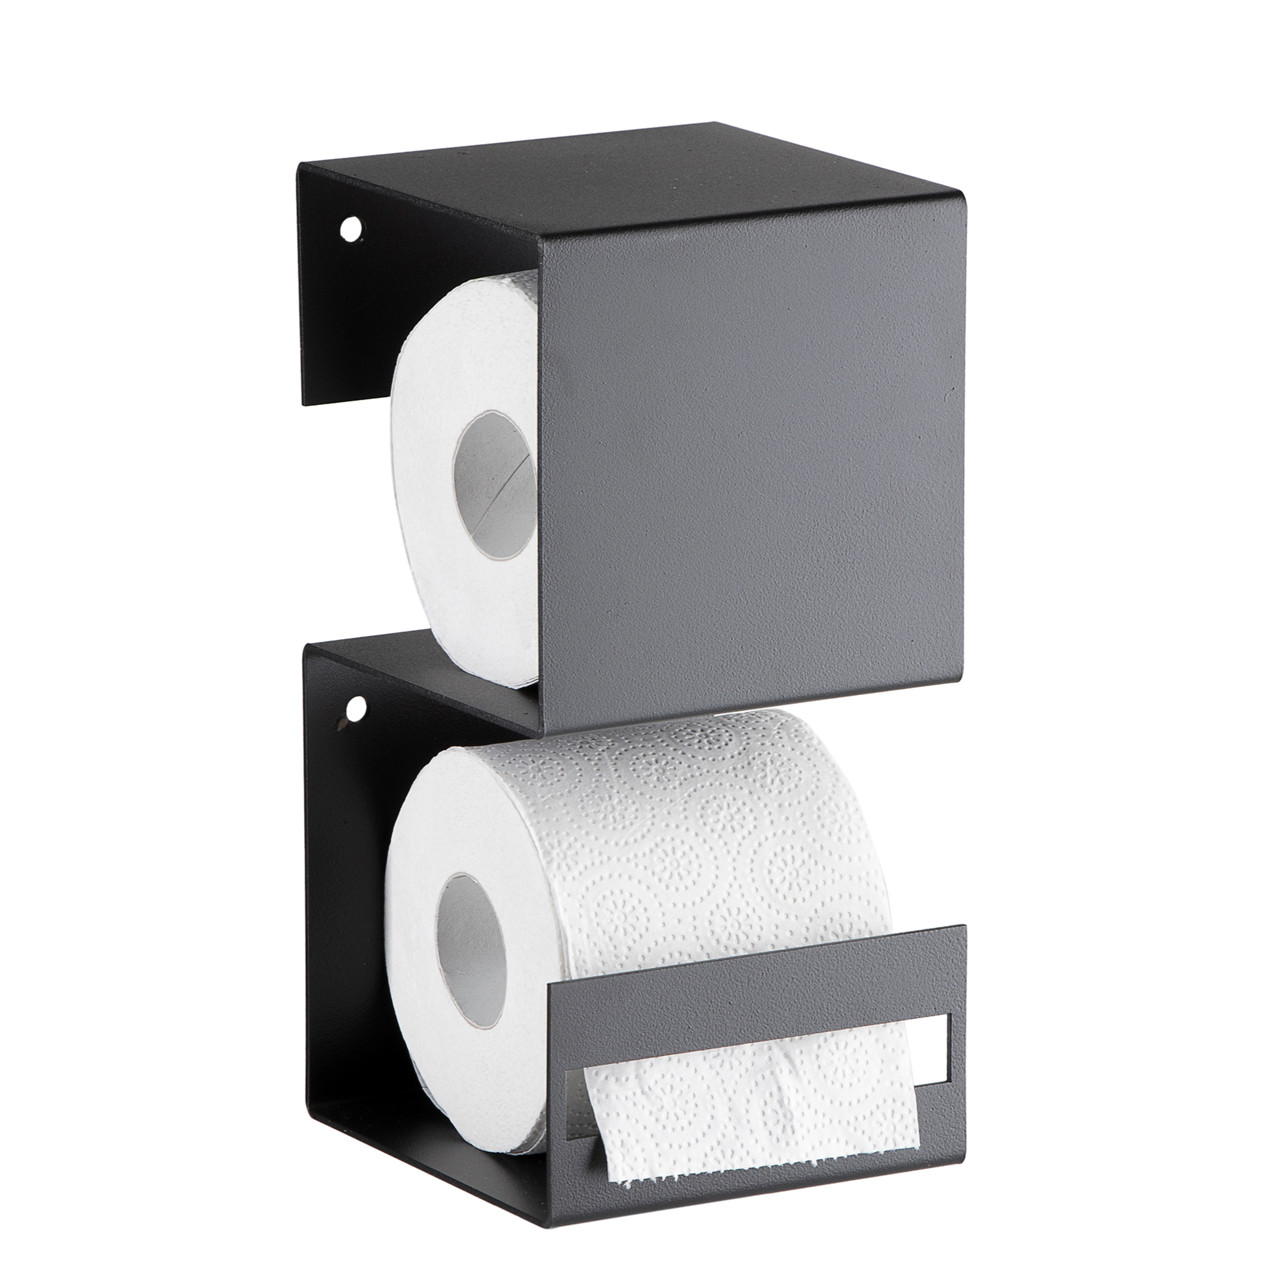 SHAPE IT toiletrulleholder sort // Forventes på lager til vinter